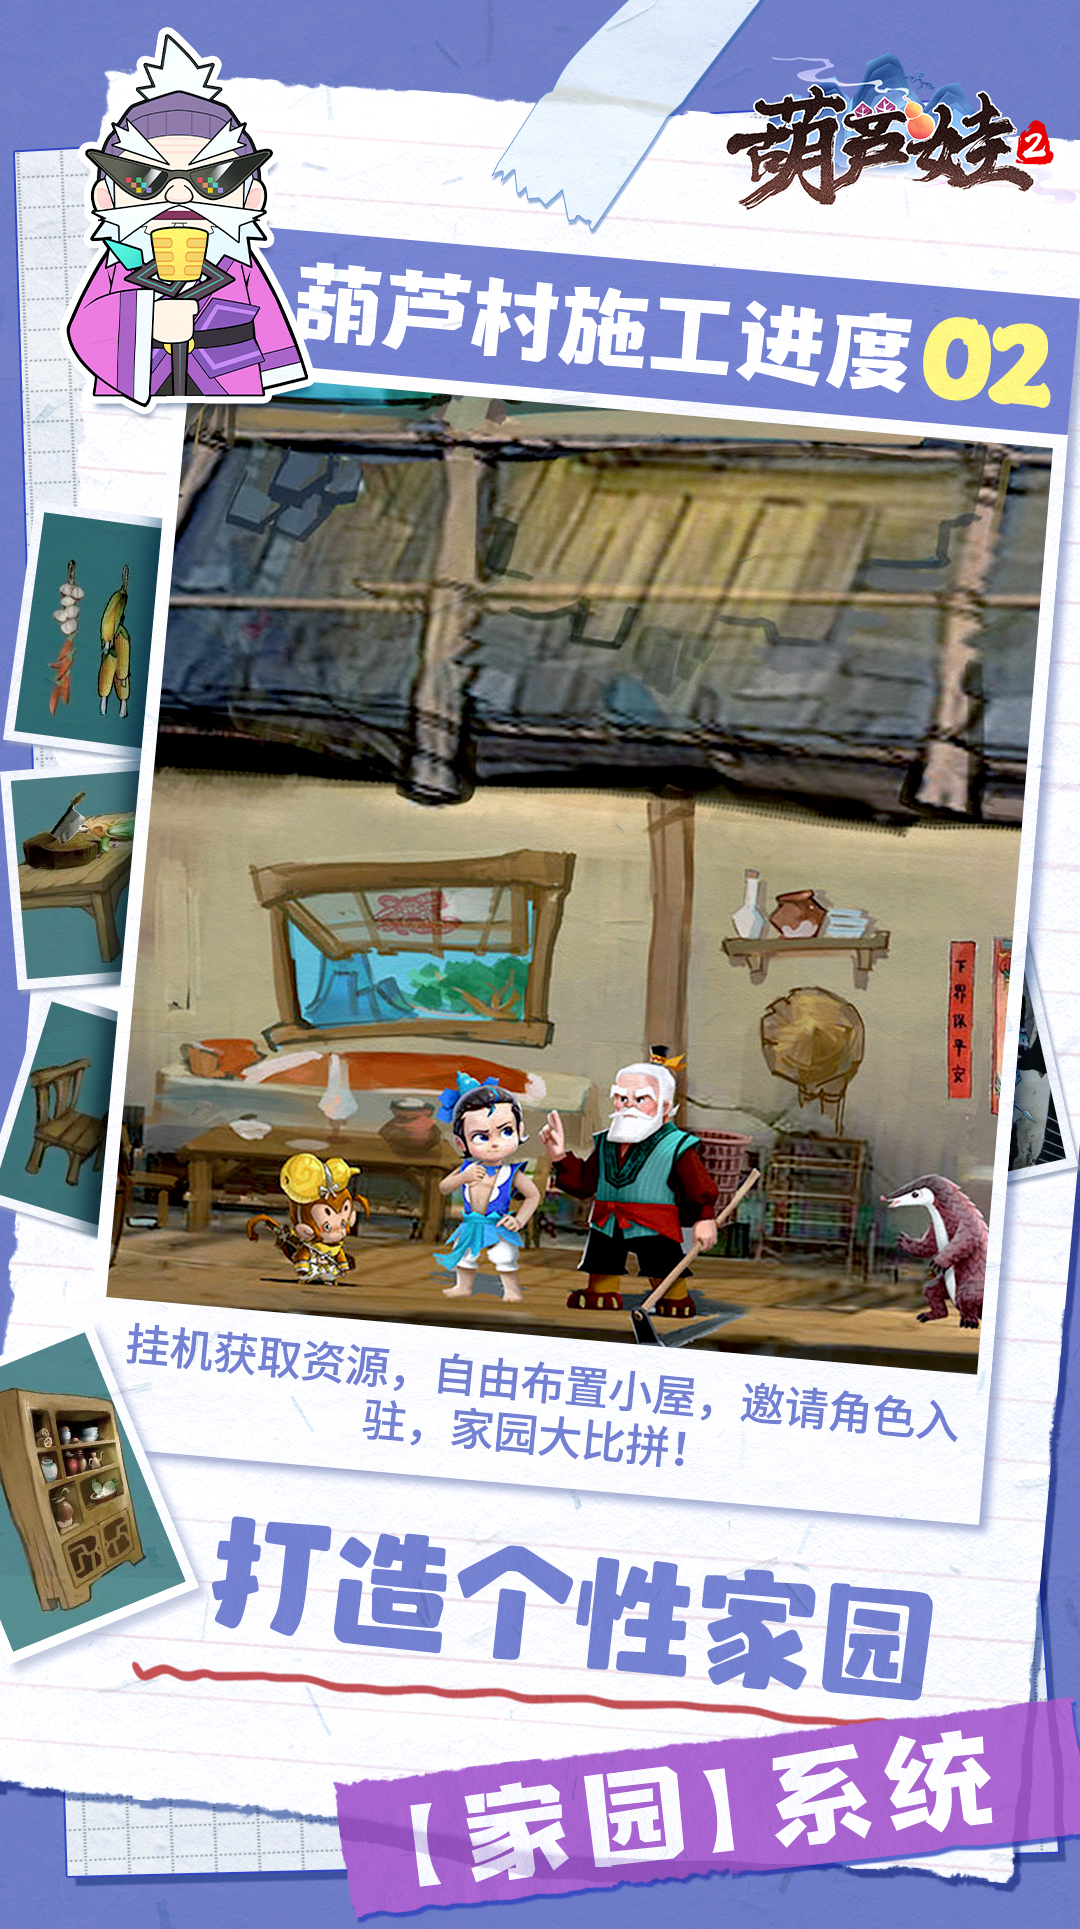 《葫芦娃2》手游爆料第二期 家园系统展示